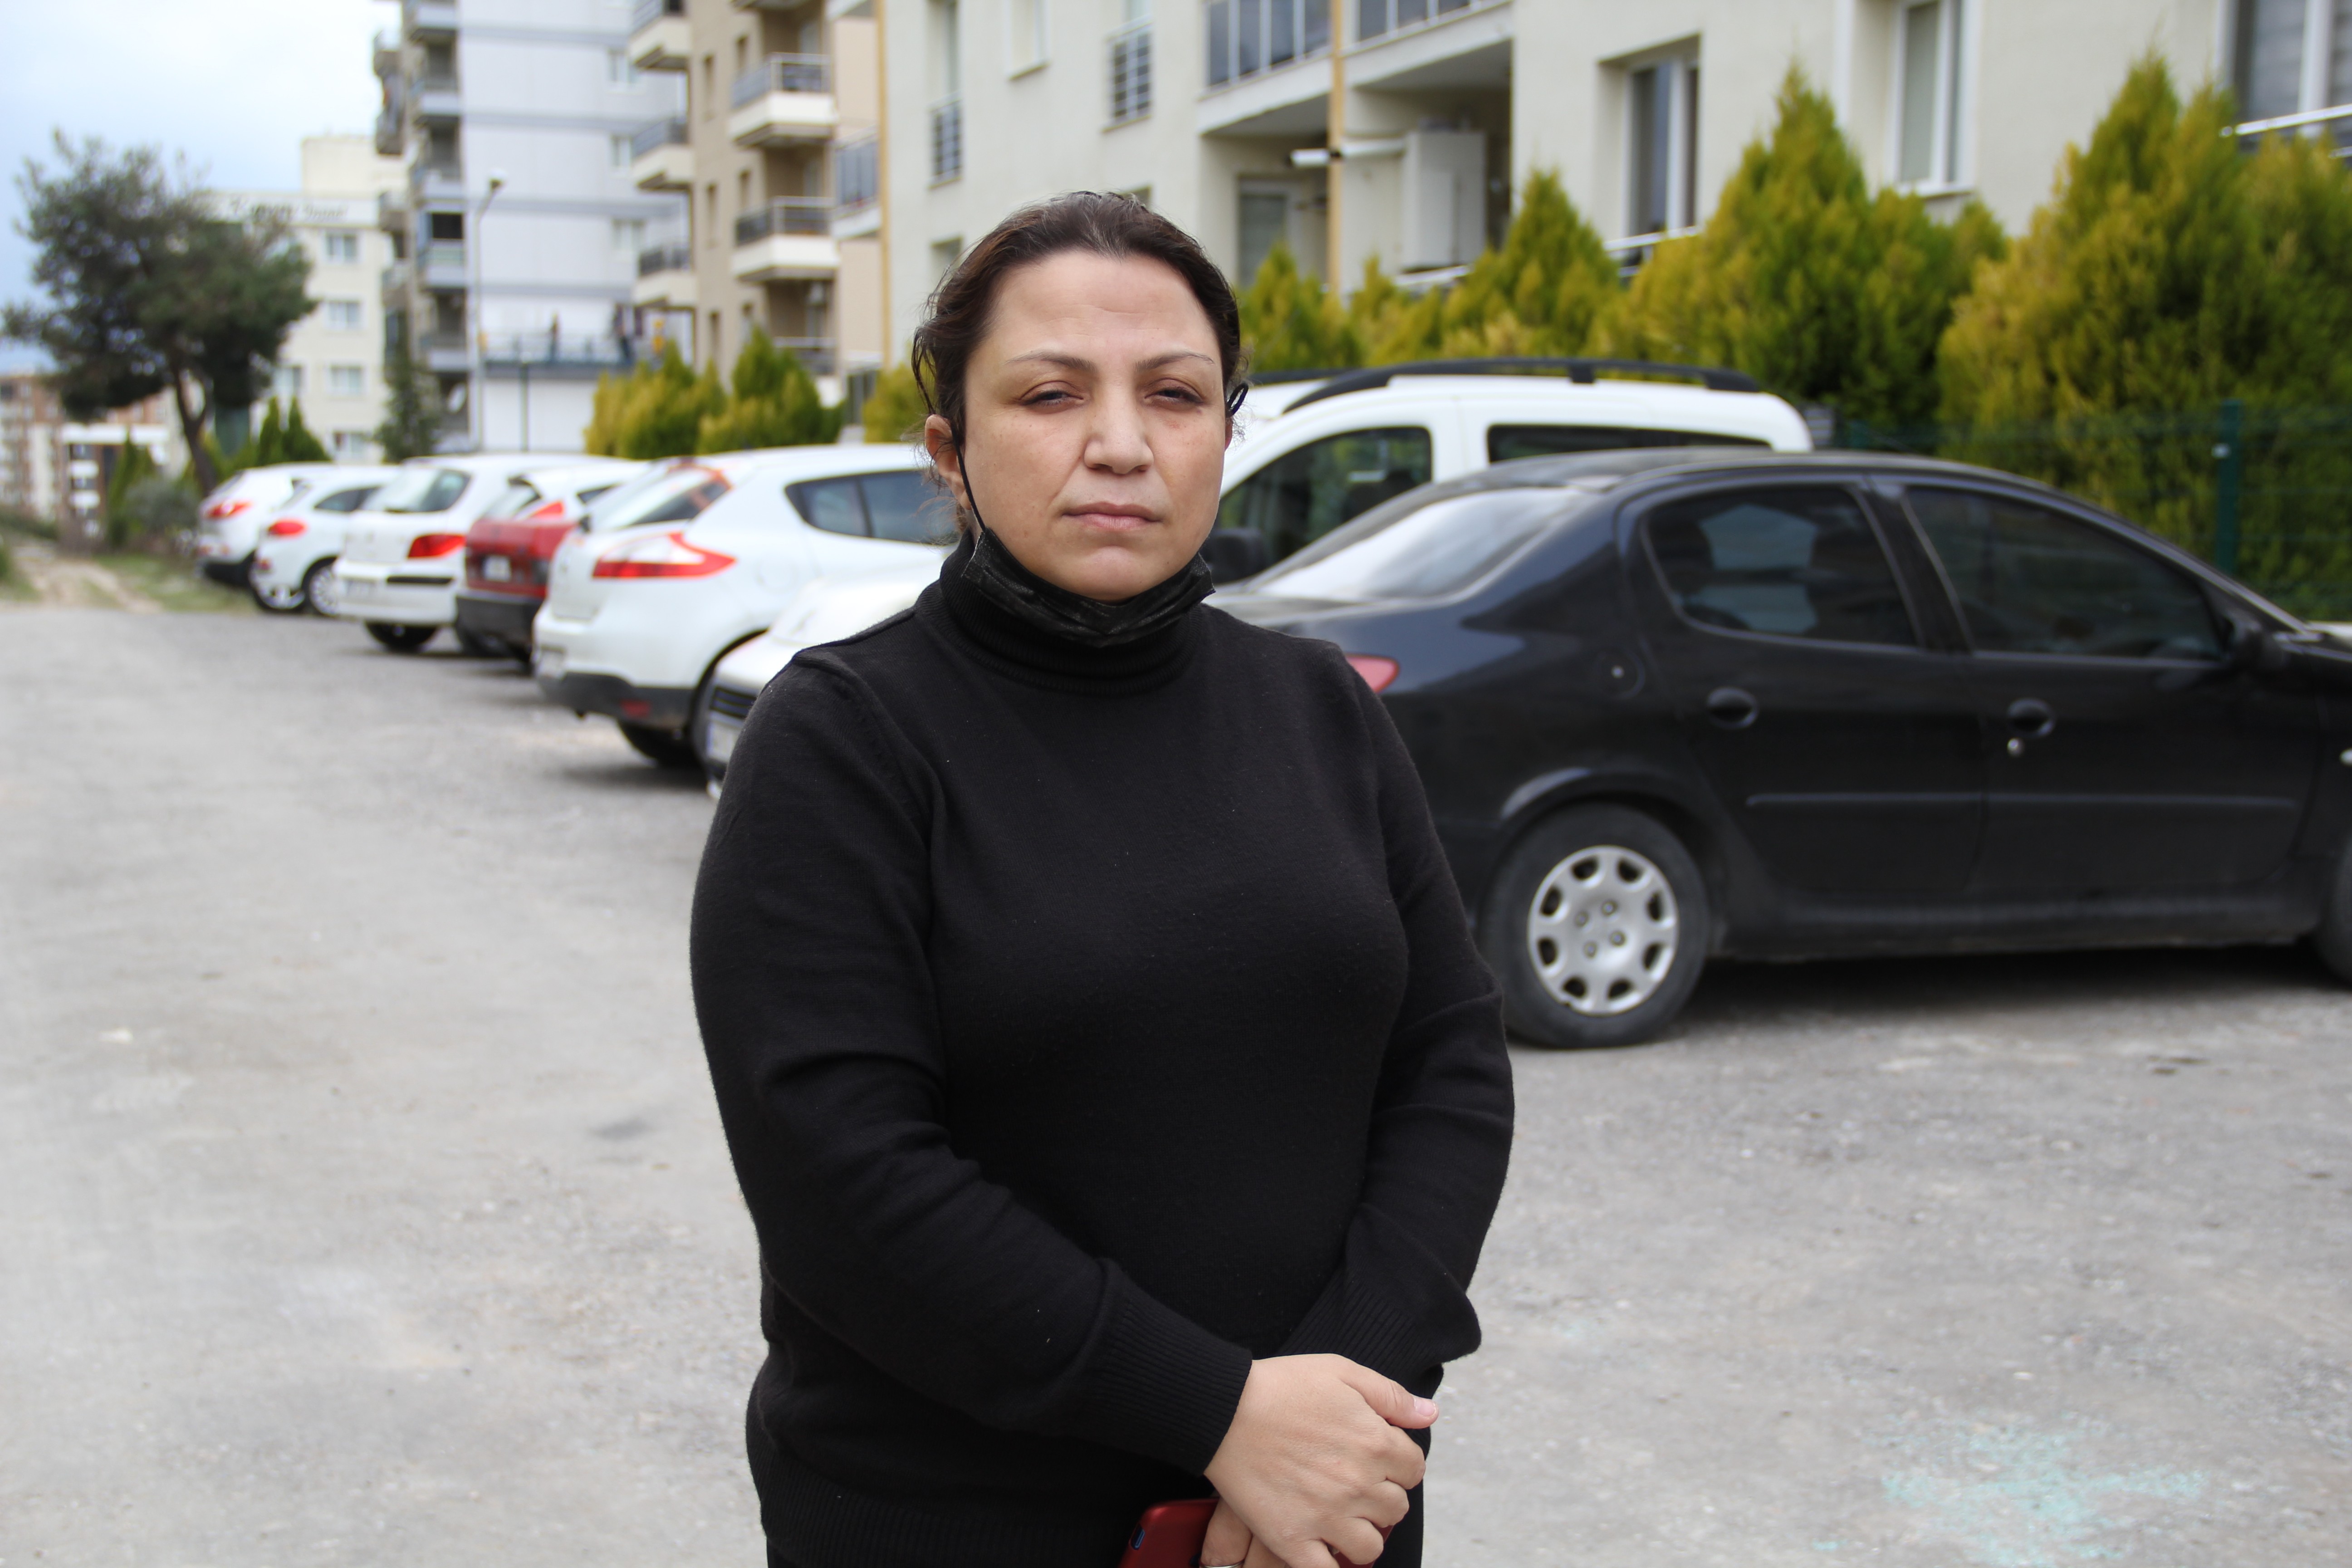 İzmir'de ev sahibi ve yakınları tarafından darbedilen kadın şikayetçi oldu